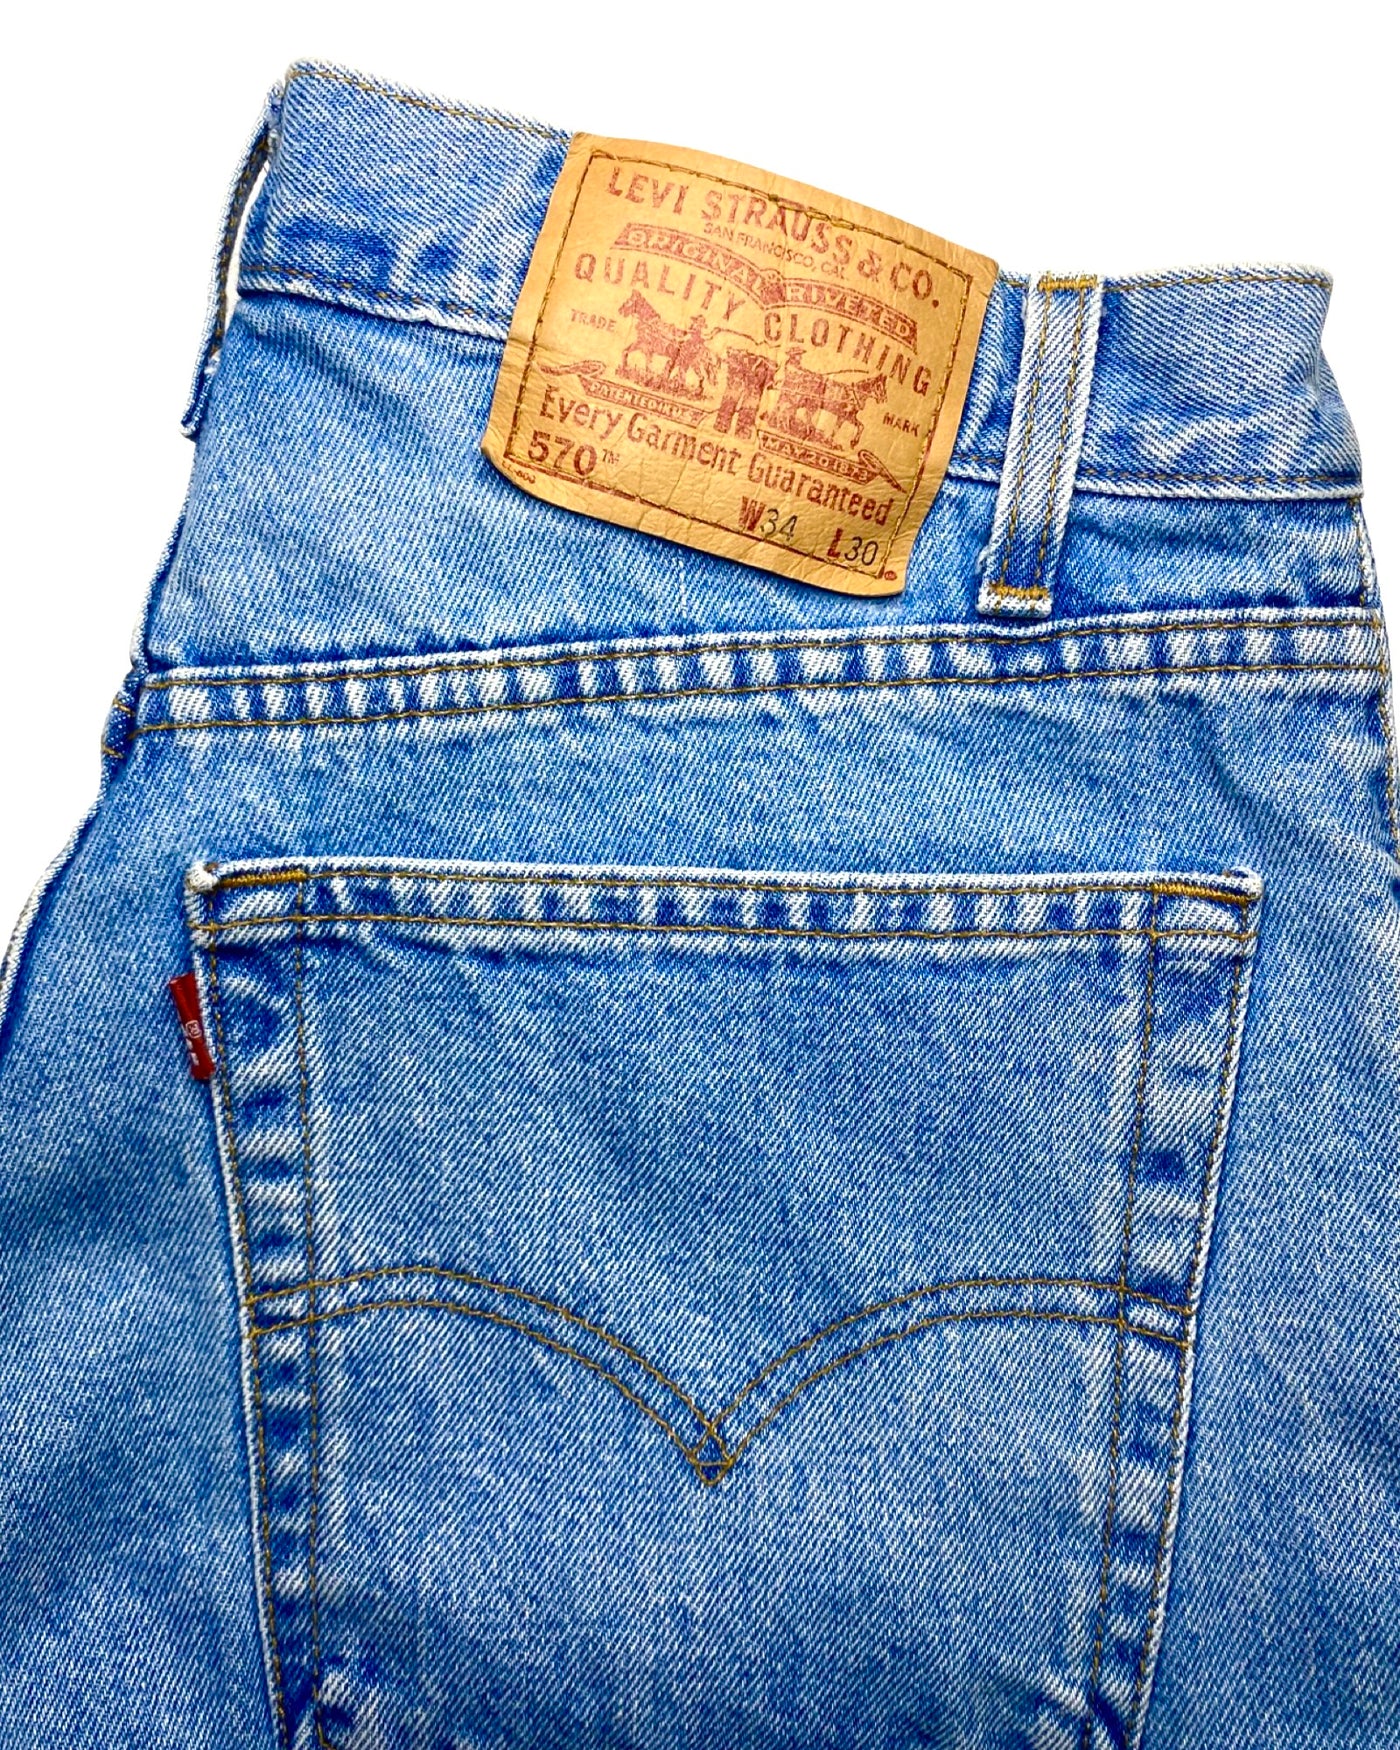 Vintage 90s Levi 570 Jeans